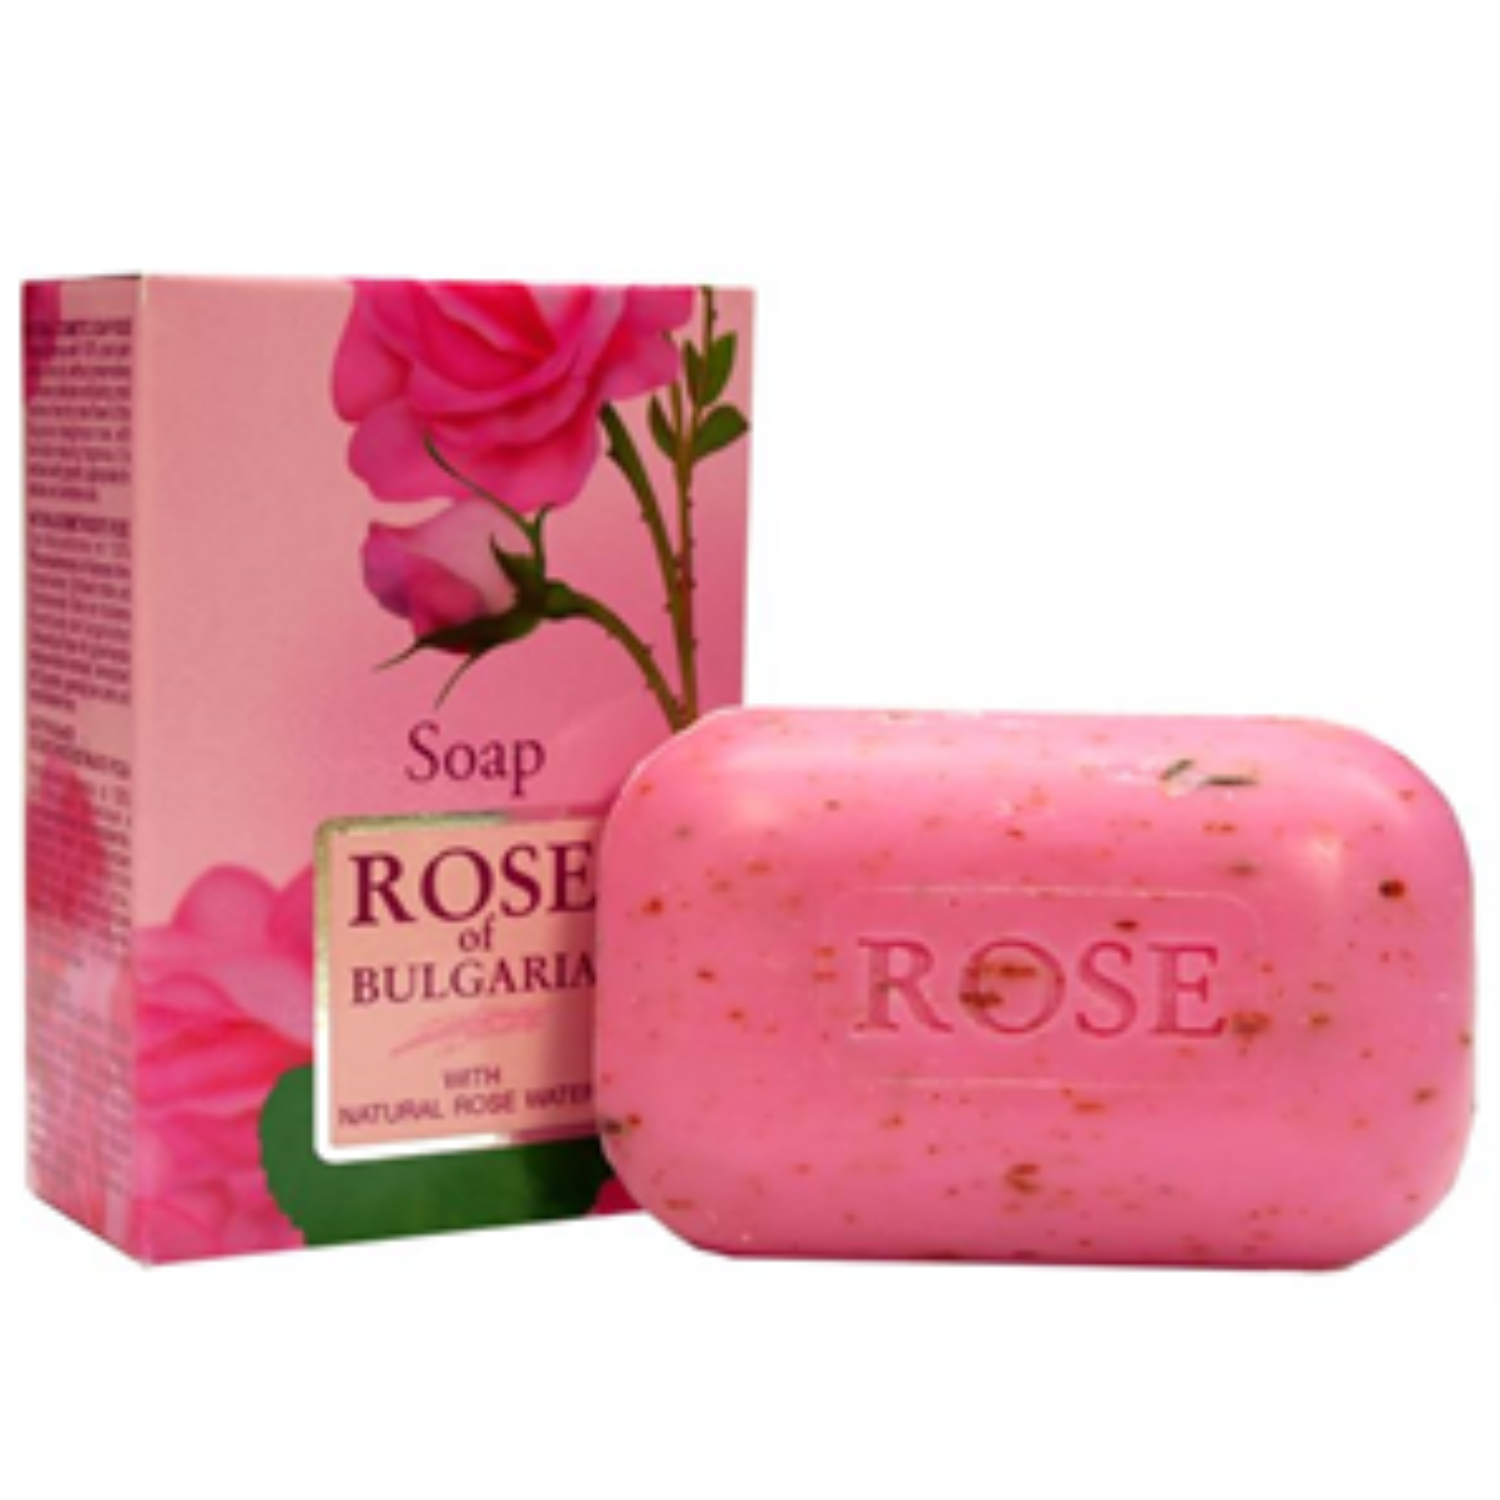 Biofresh szappan rózsás 100g